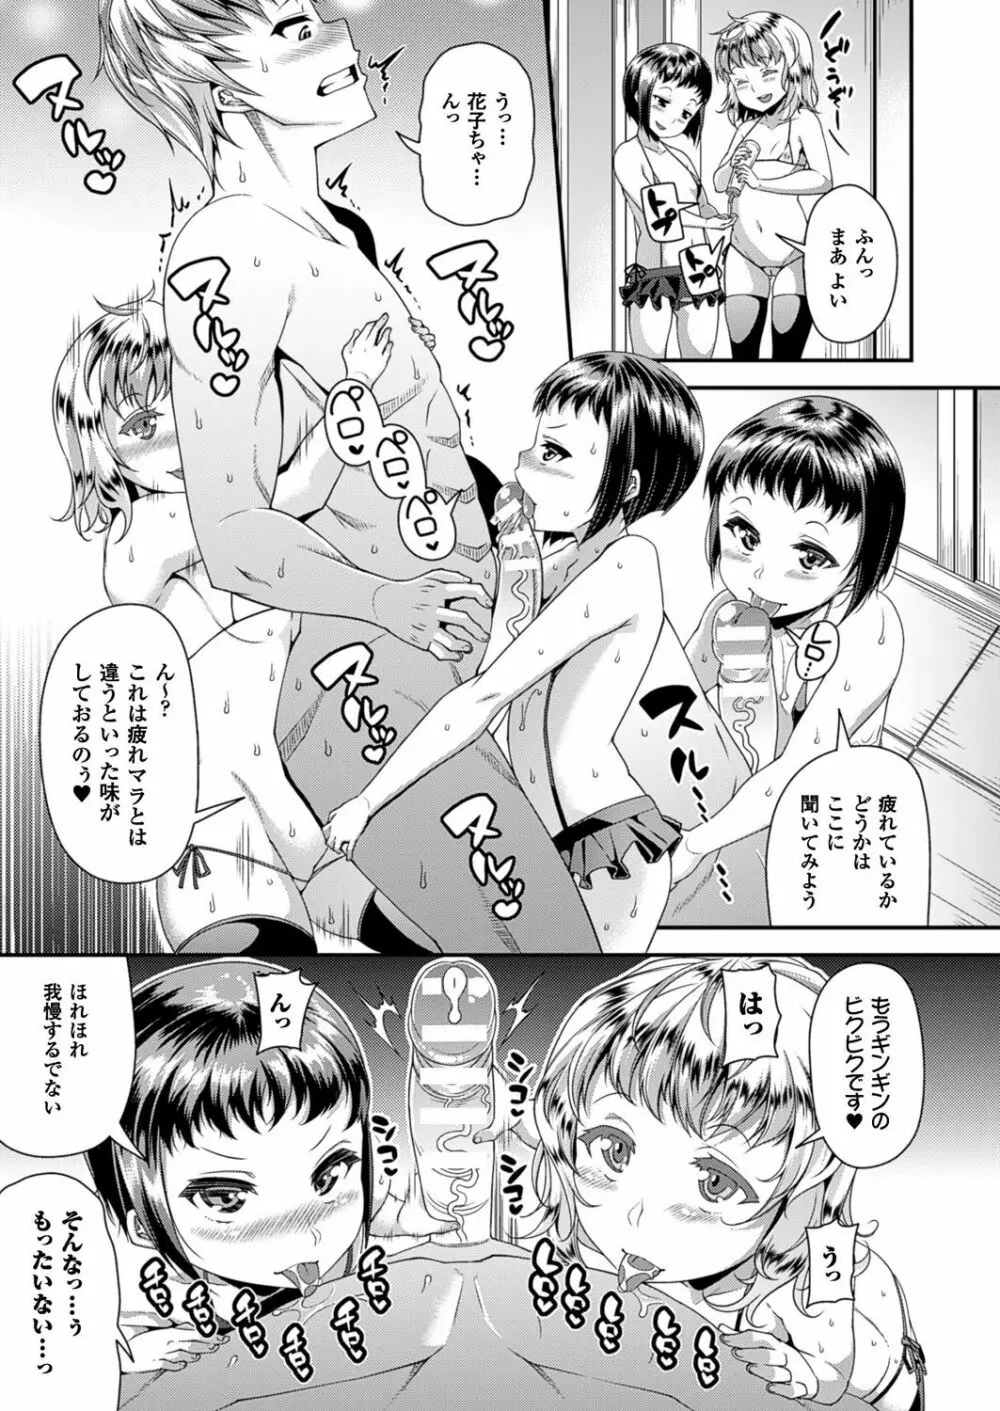 Toshi Densetsu Series Ch. 01-03 Page.46